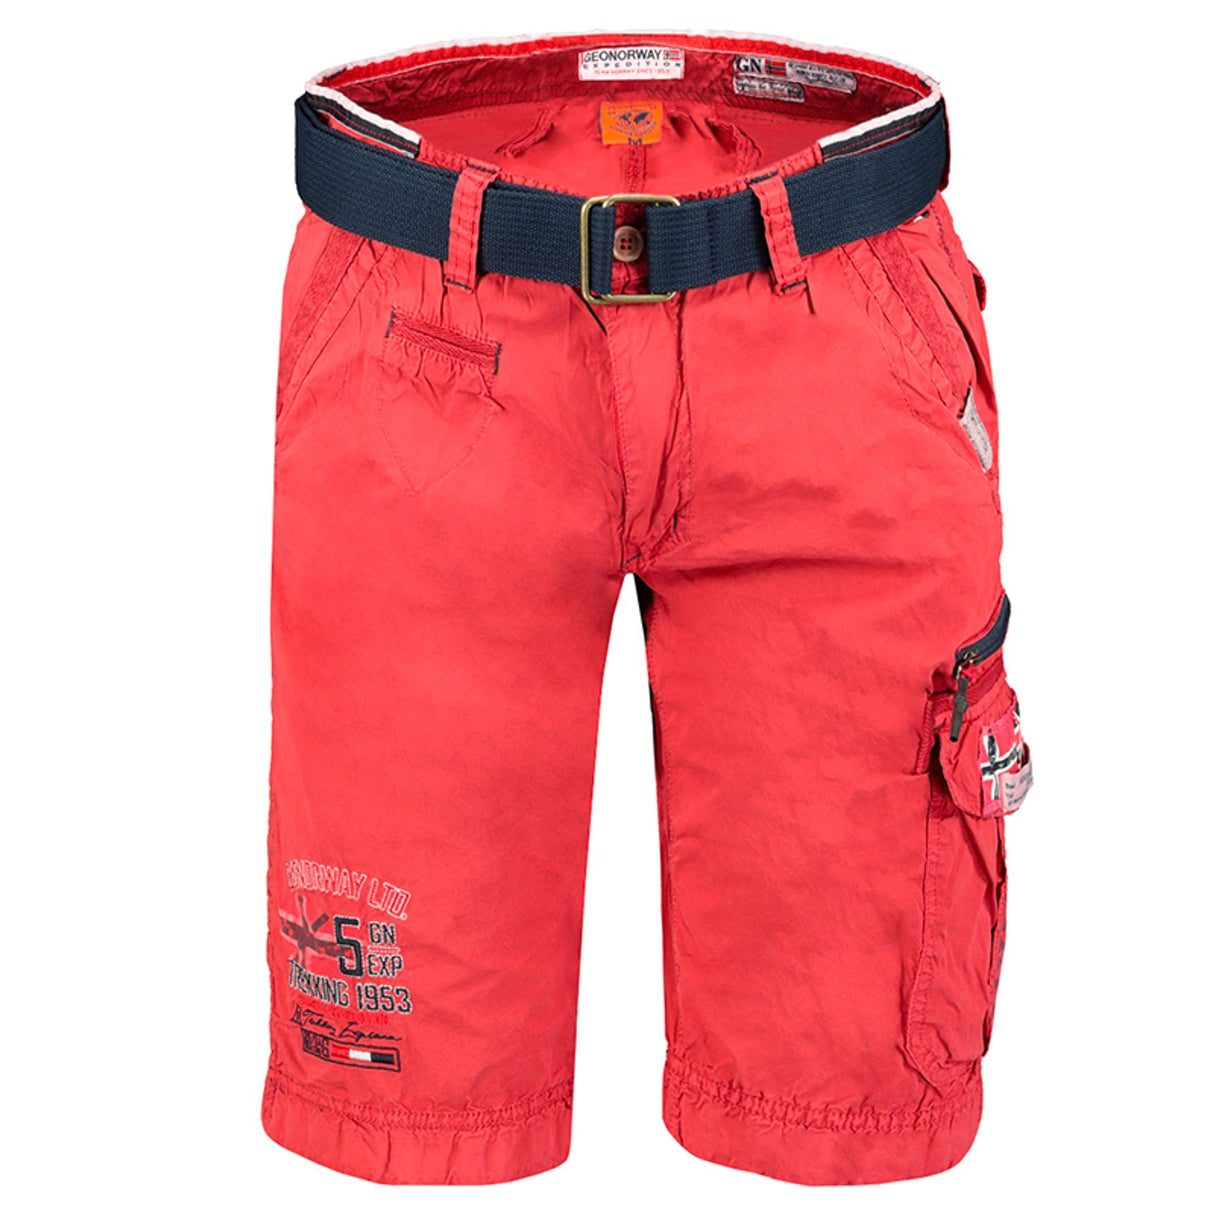 Men's Spring/Summer shorts Zip-fly shorts 6-pocket shorts Solid color shorts Cotton shorts Wash at 30° C